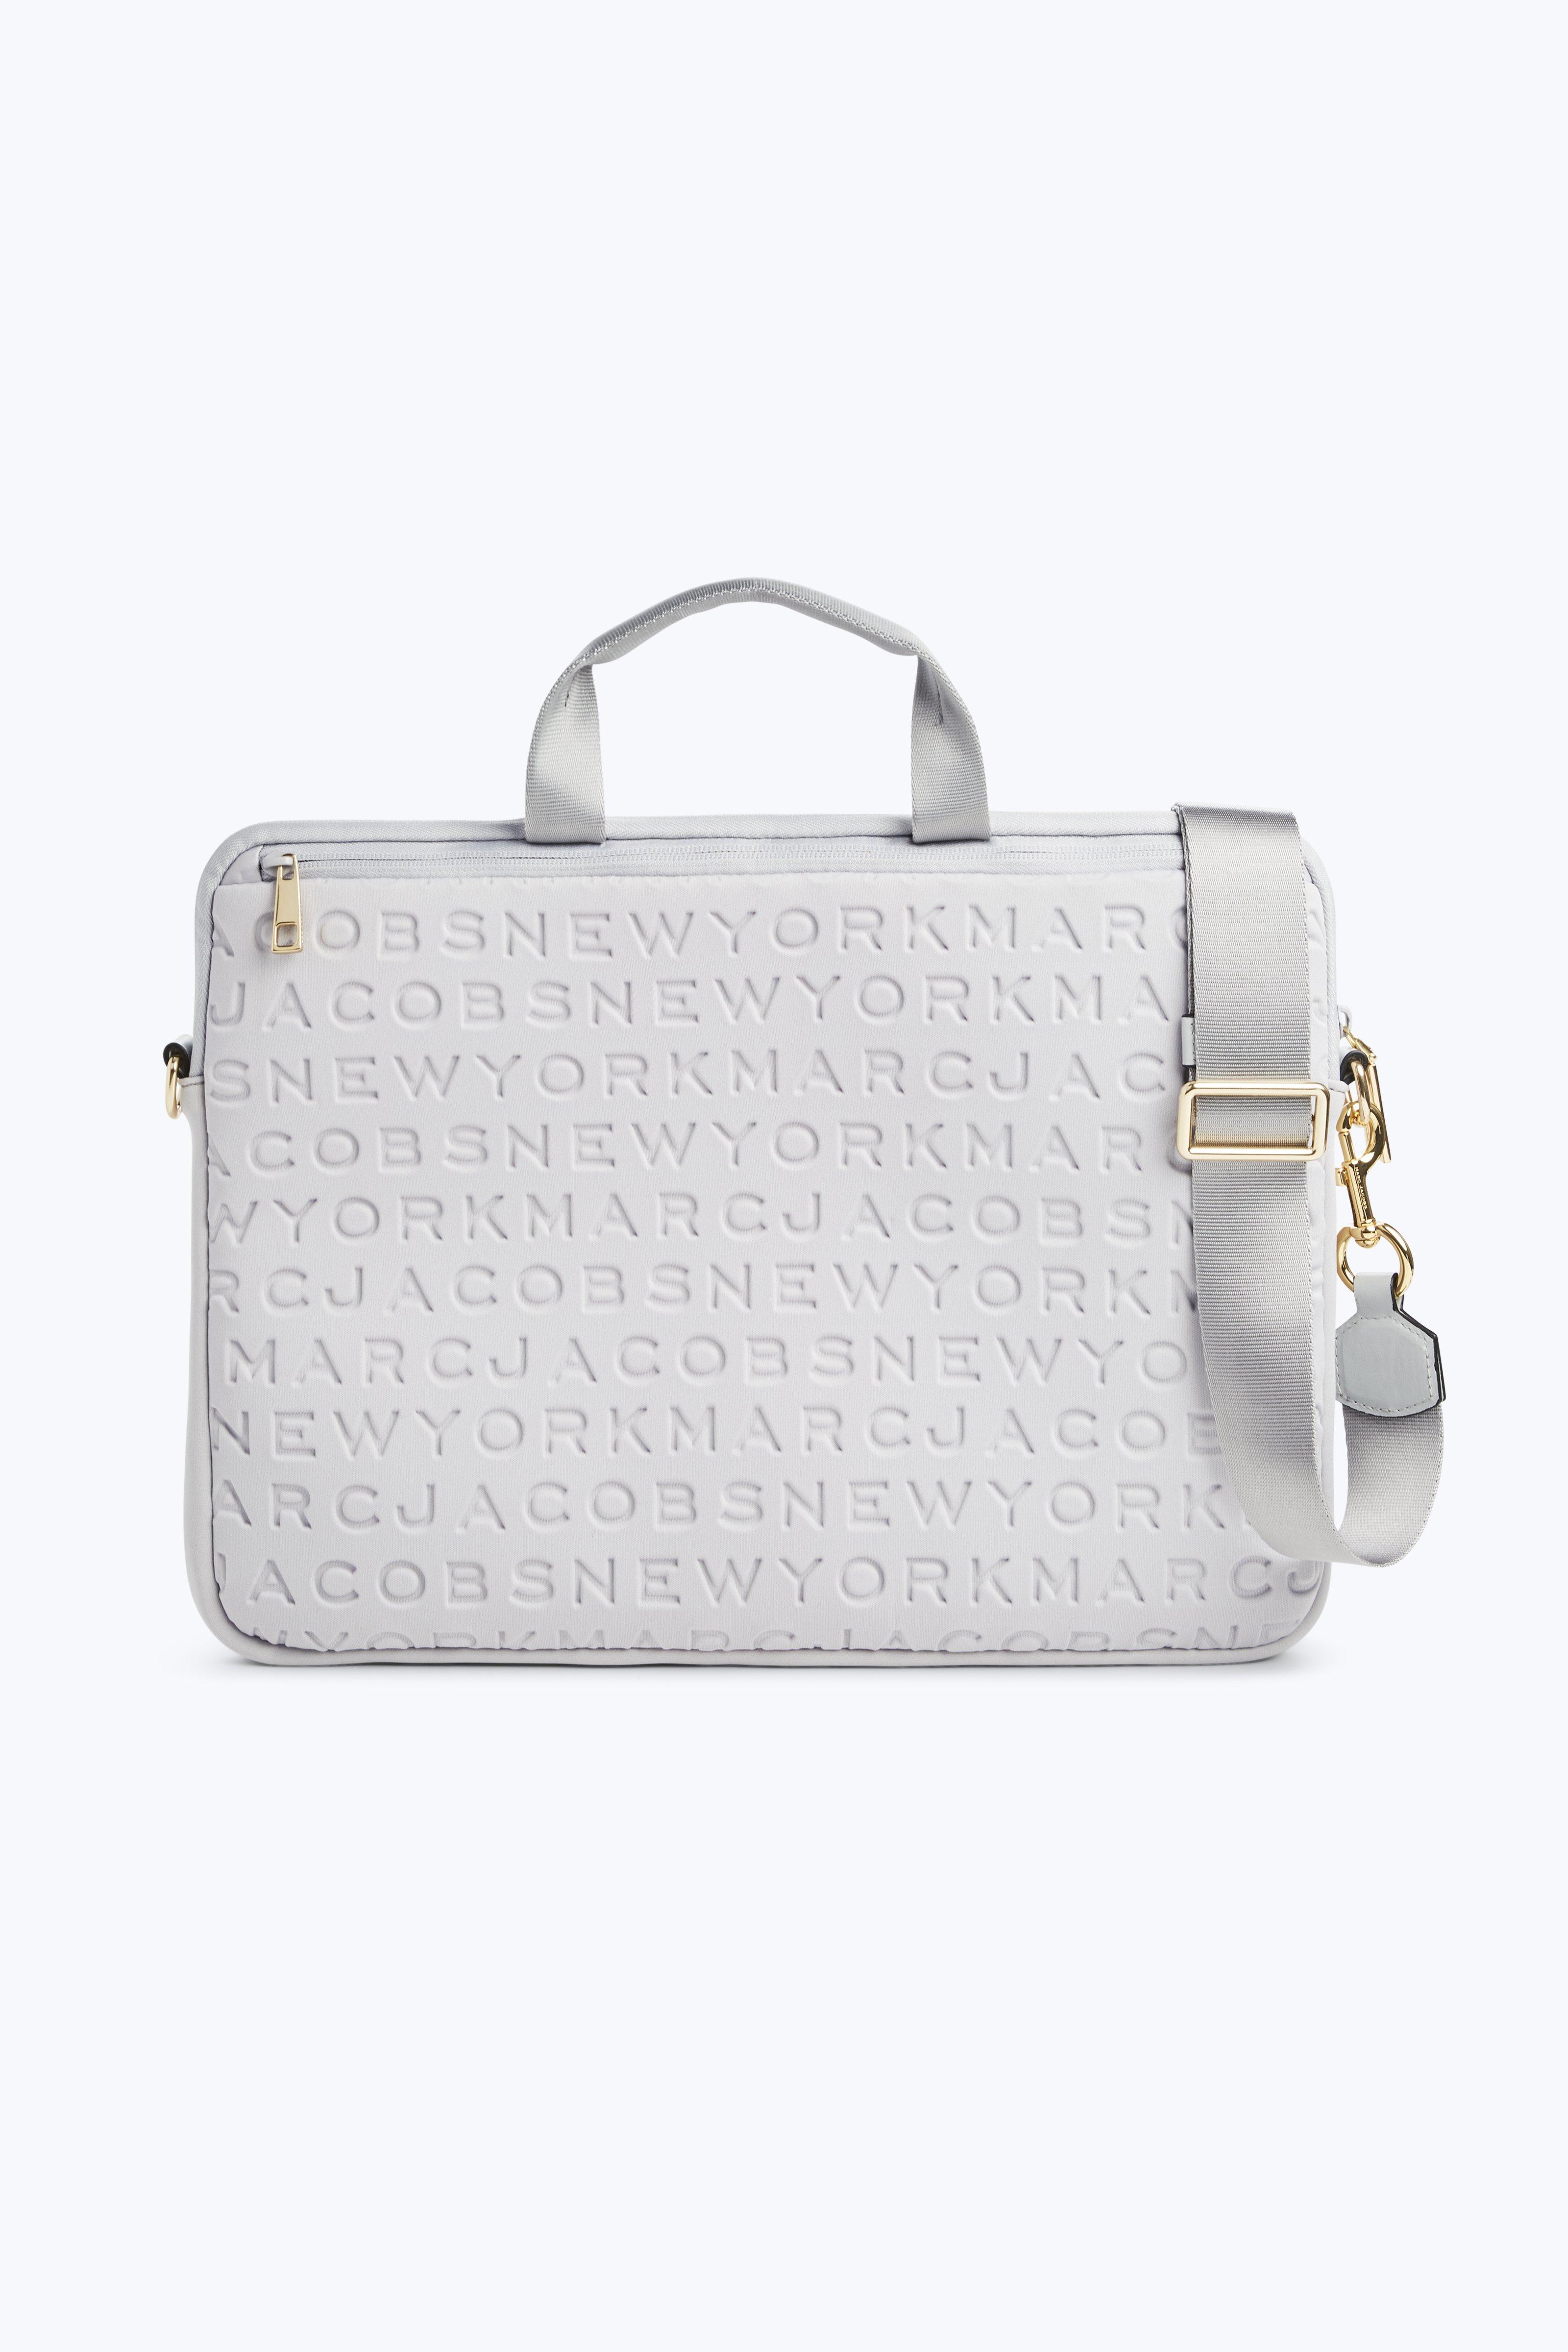 Laptop bags & briefcases Marc Jacobs - Snapshot Commuter 13 laptop bag -  M0014615002